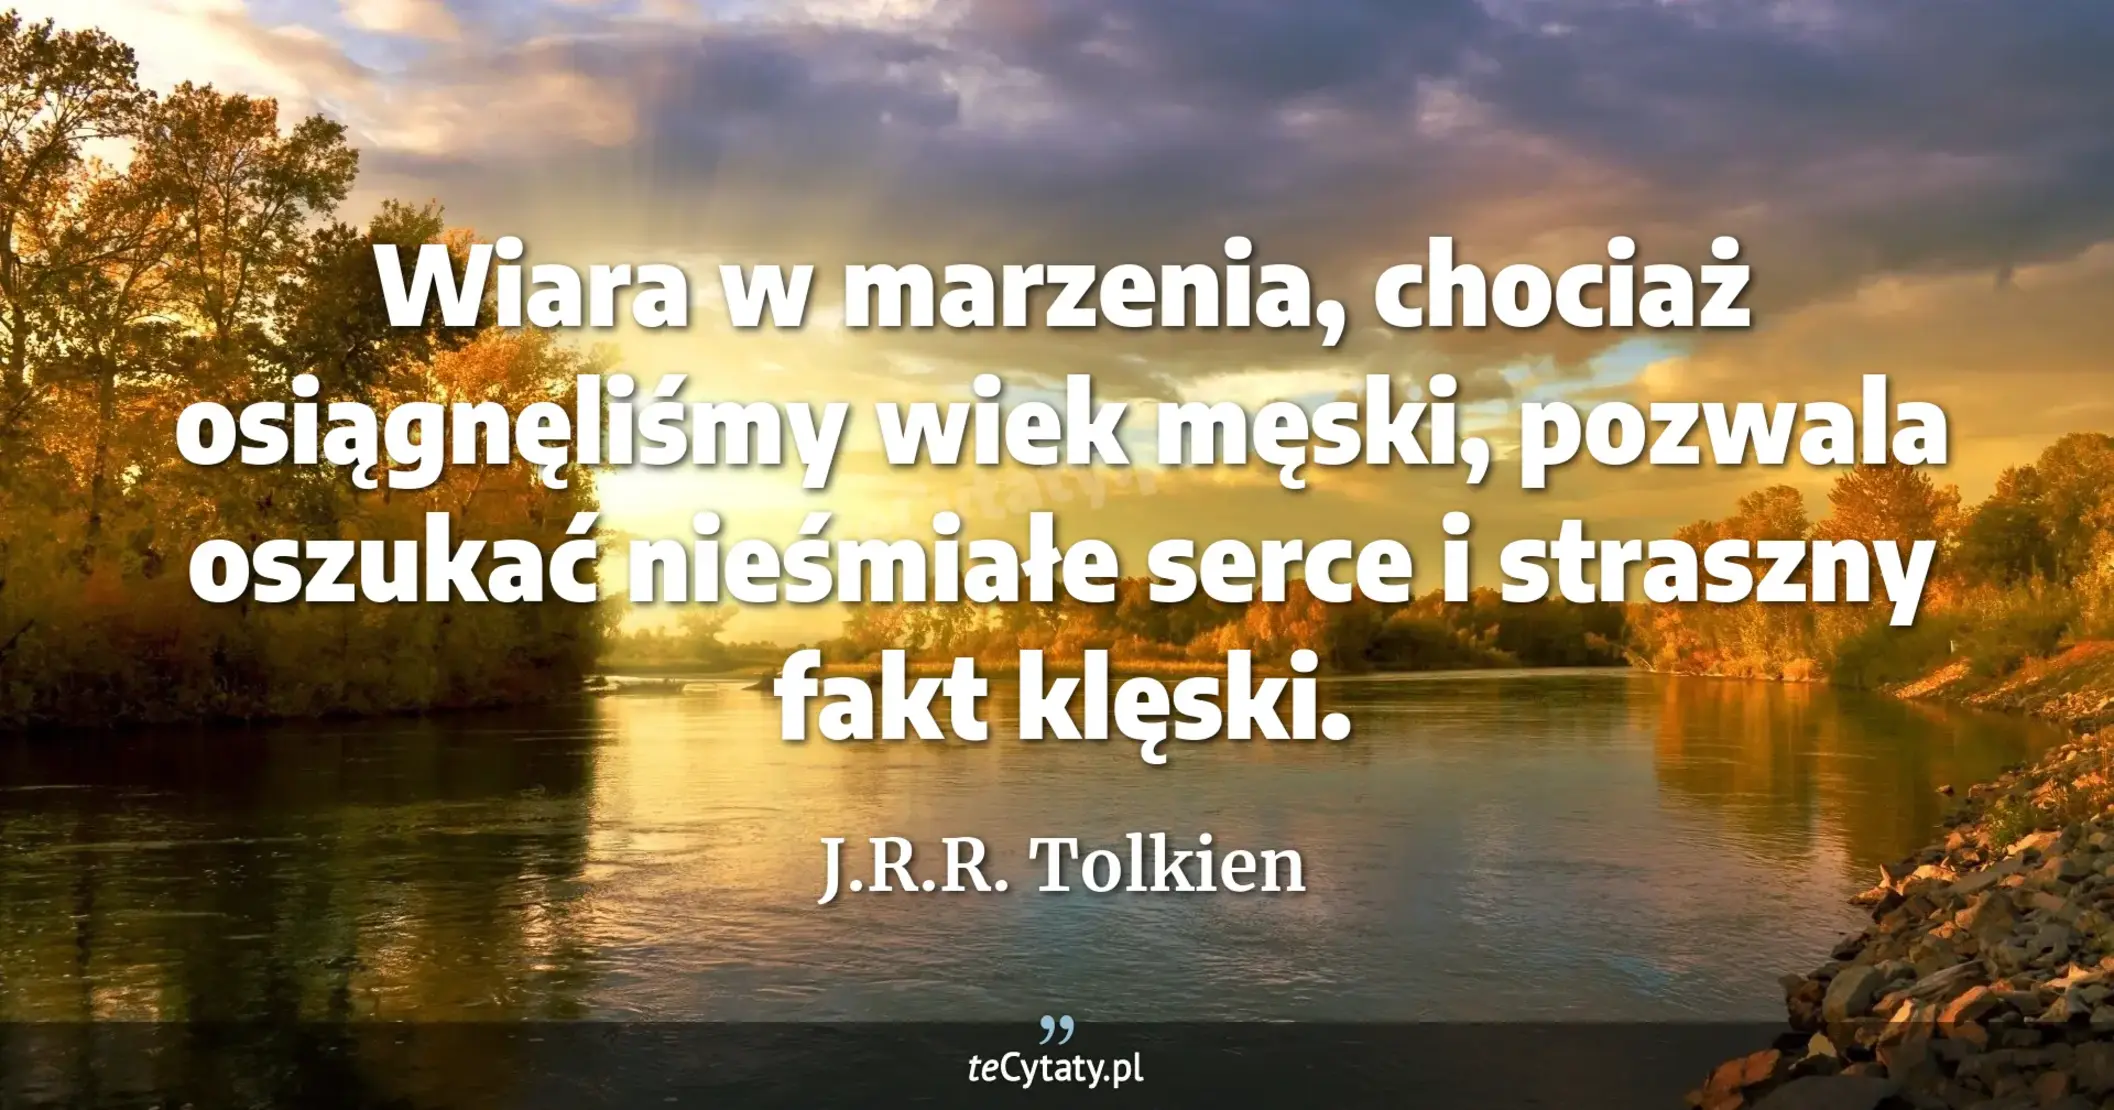 Wiara w marzenia, chociaż osiągnęliśmy wiek męski, pozwala oszukać nieśmiałe serce i straszny fakt klęski. - J.R.R. Tolkien